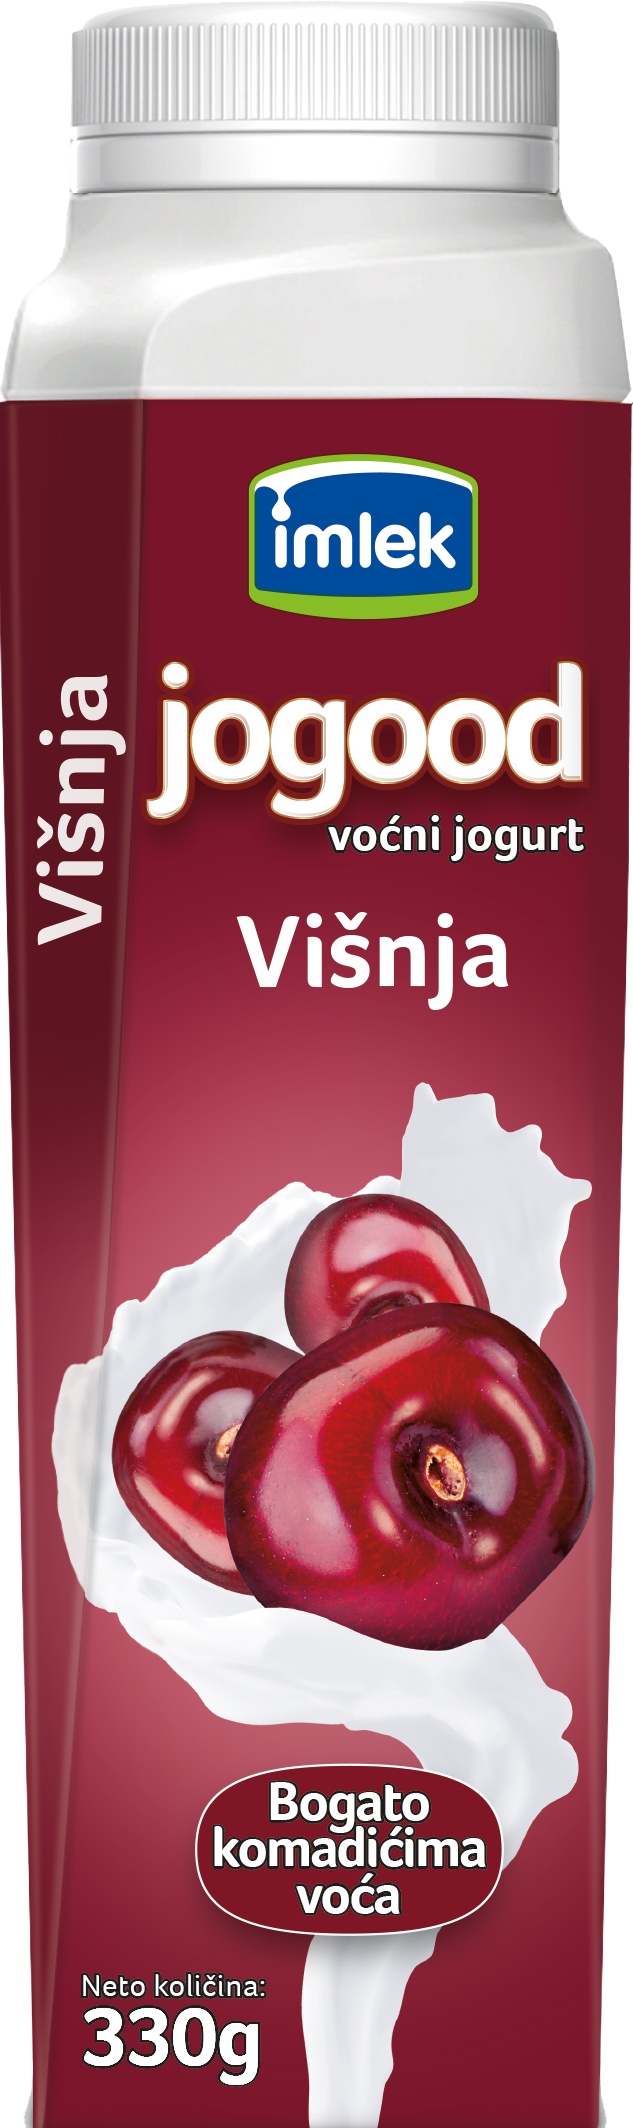 Slika za Voćni jogurt Jogood 330g